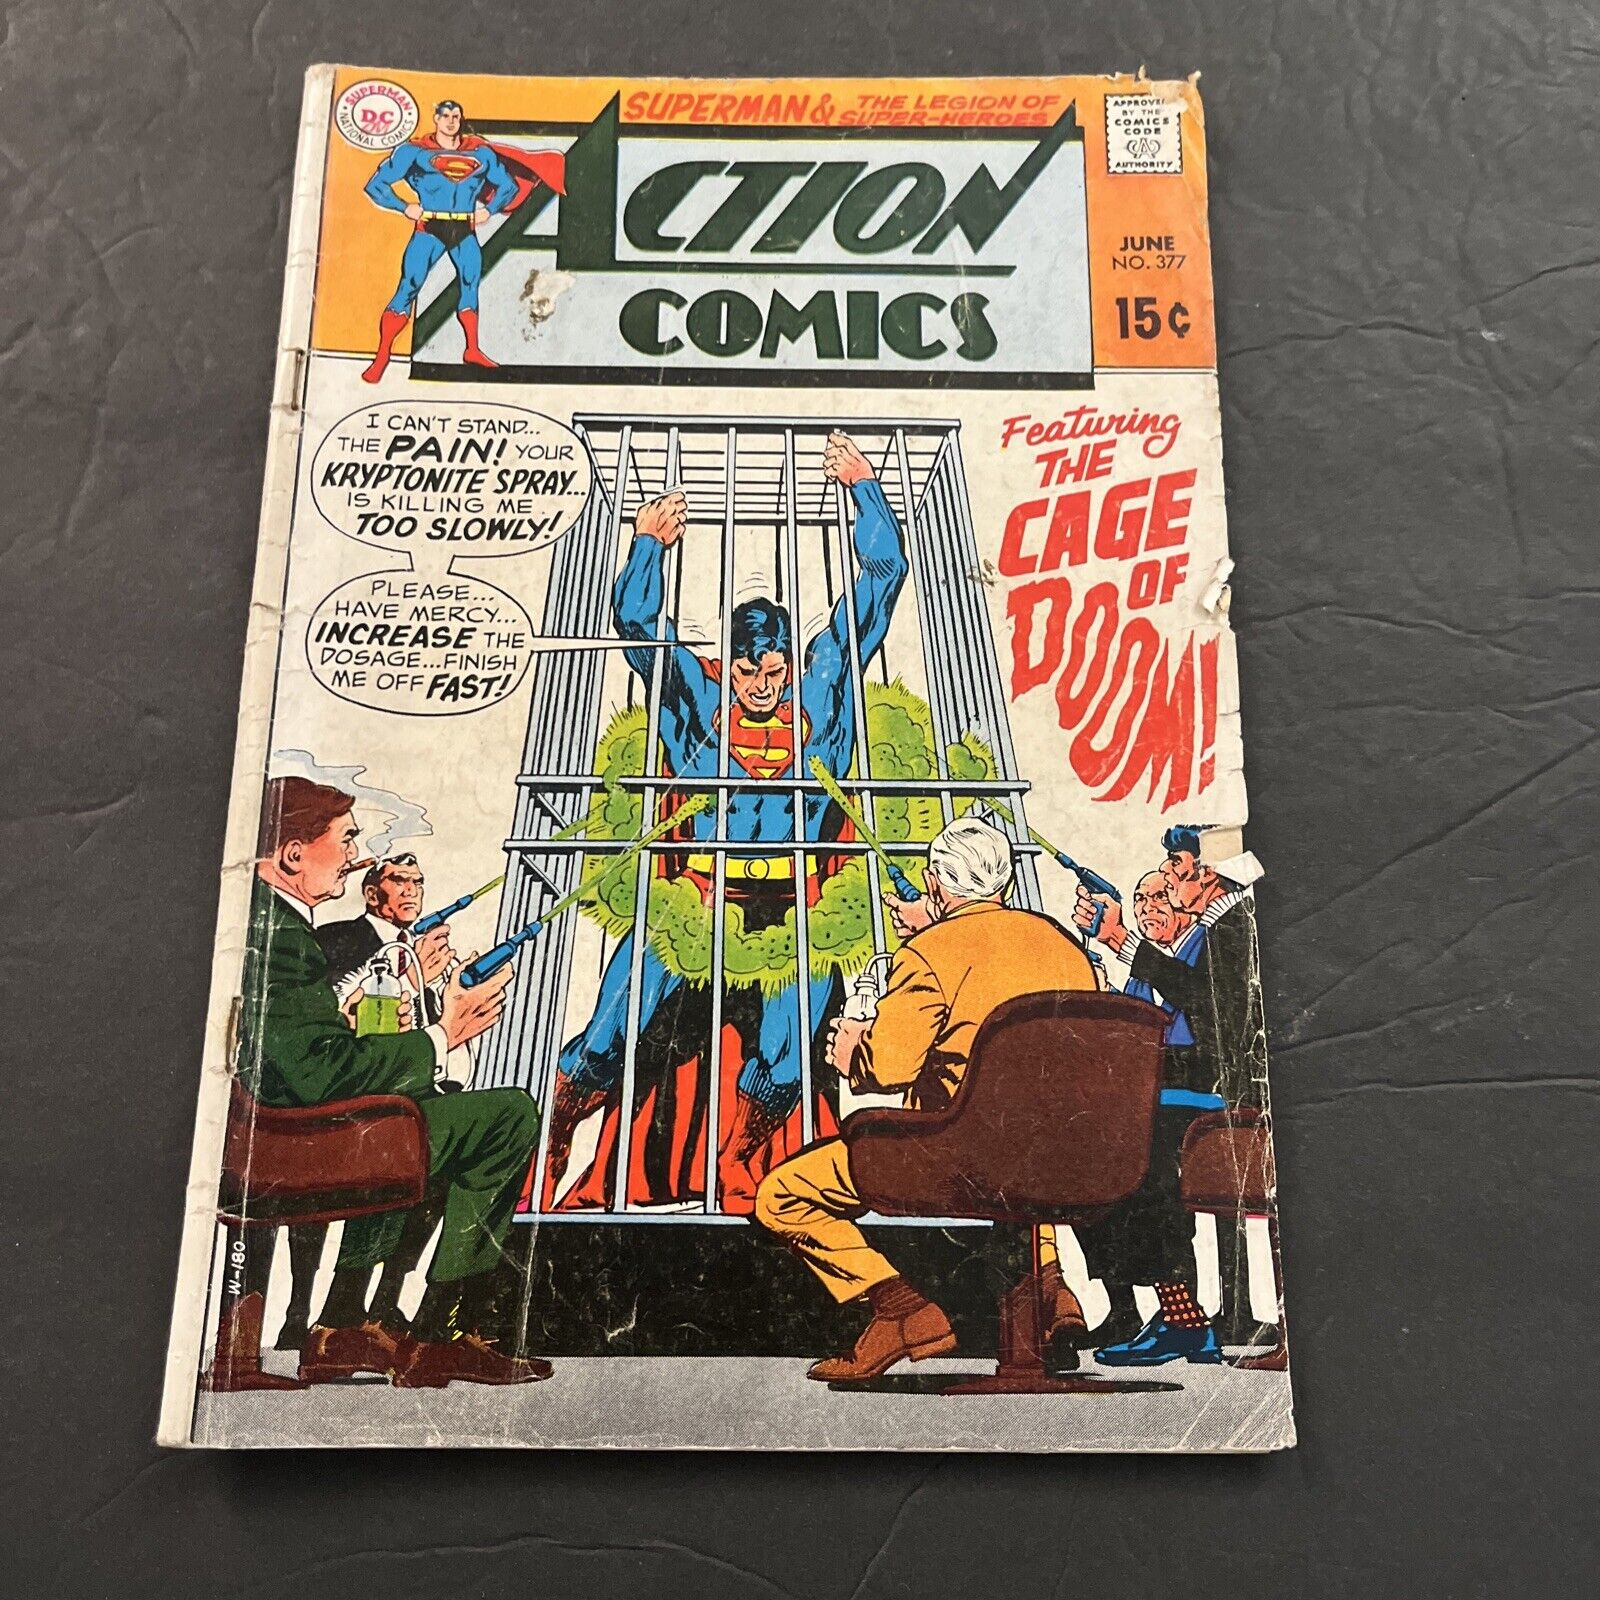 Action Comics #377 (DC Comics June 1969)